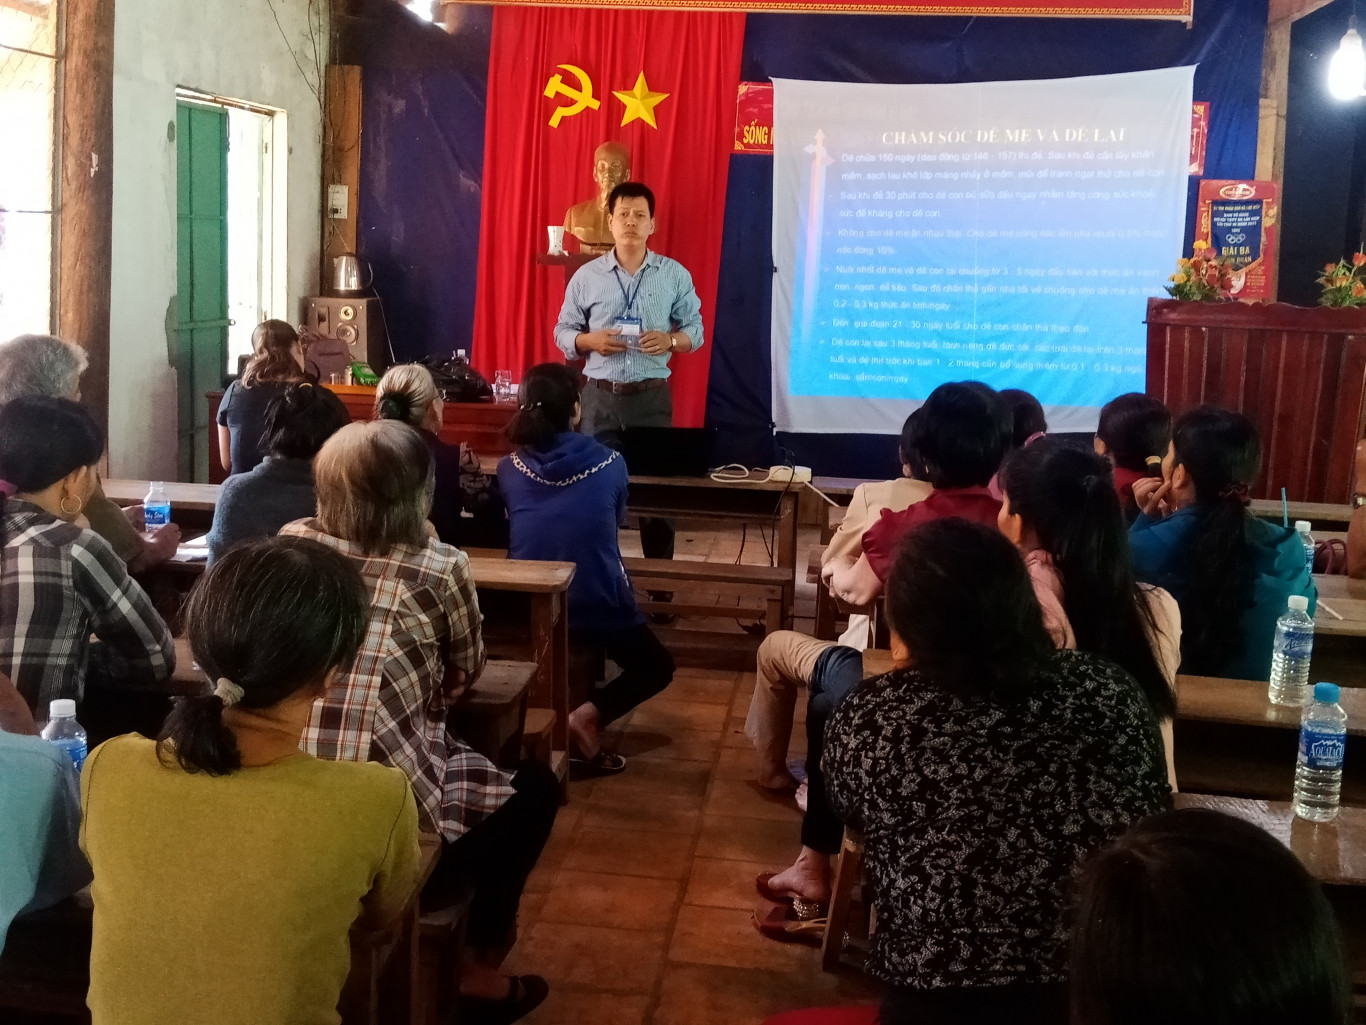 Hợp tác xã kinh doanh chăn nuôi dê Lộc Hiệp họp đánh giá kết quả kinh doanh 6 tháng đầu năm 2019